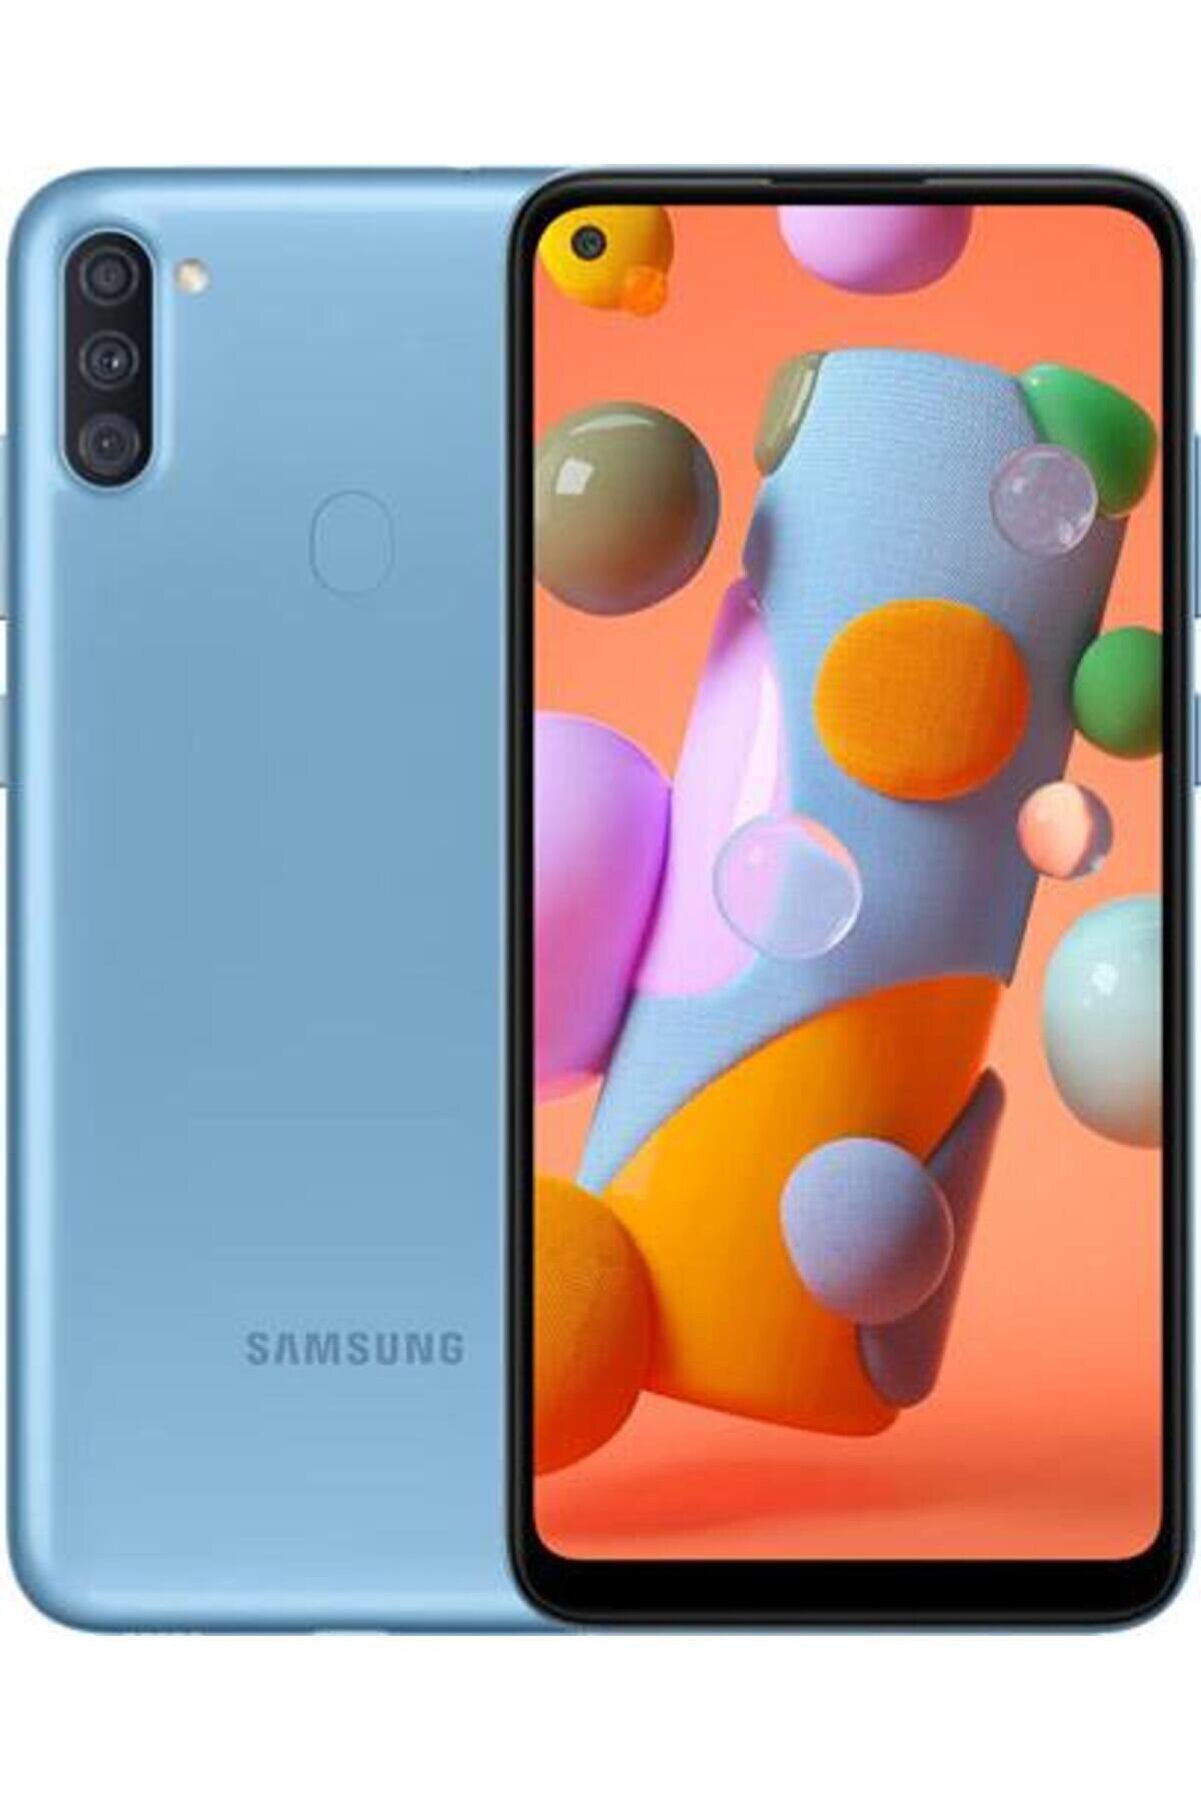 Samsung Yenilenmiş Galaxy A11 32 Gb Mavi Cep Telefonu B Kalite